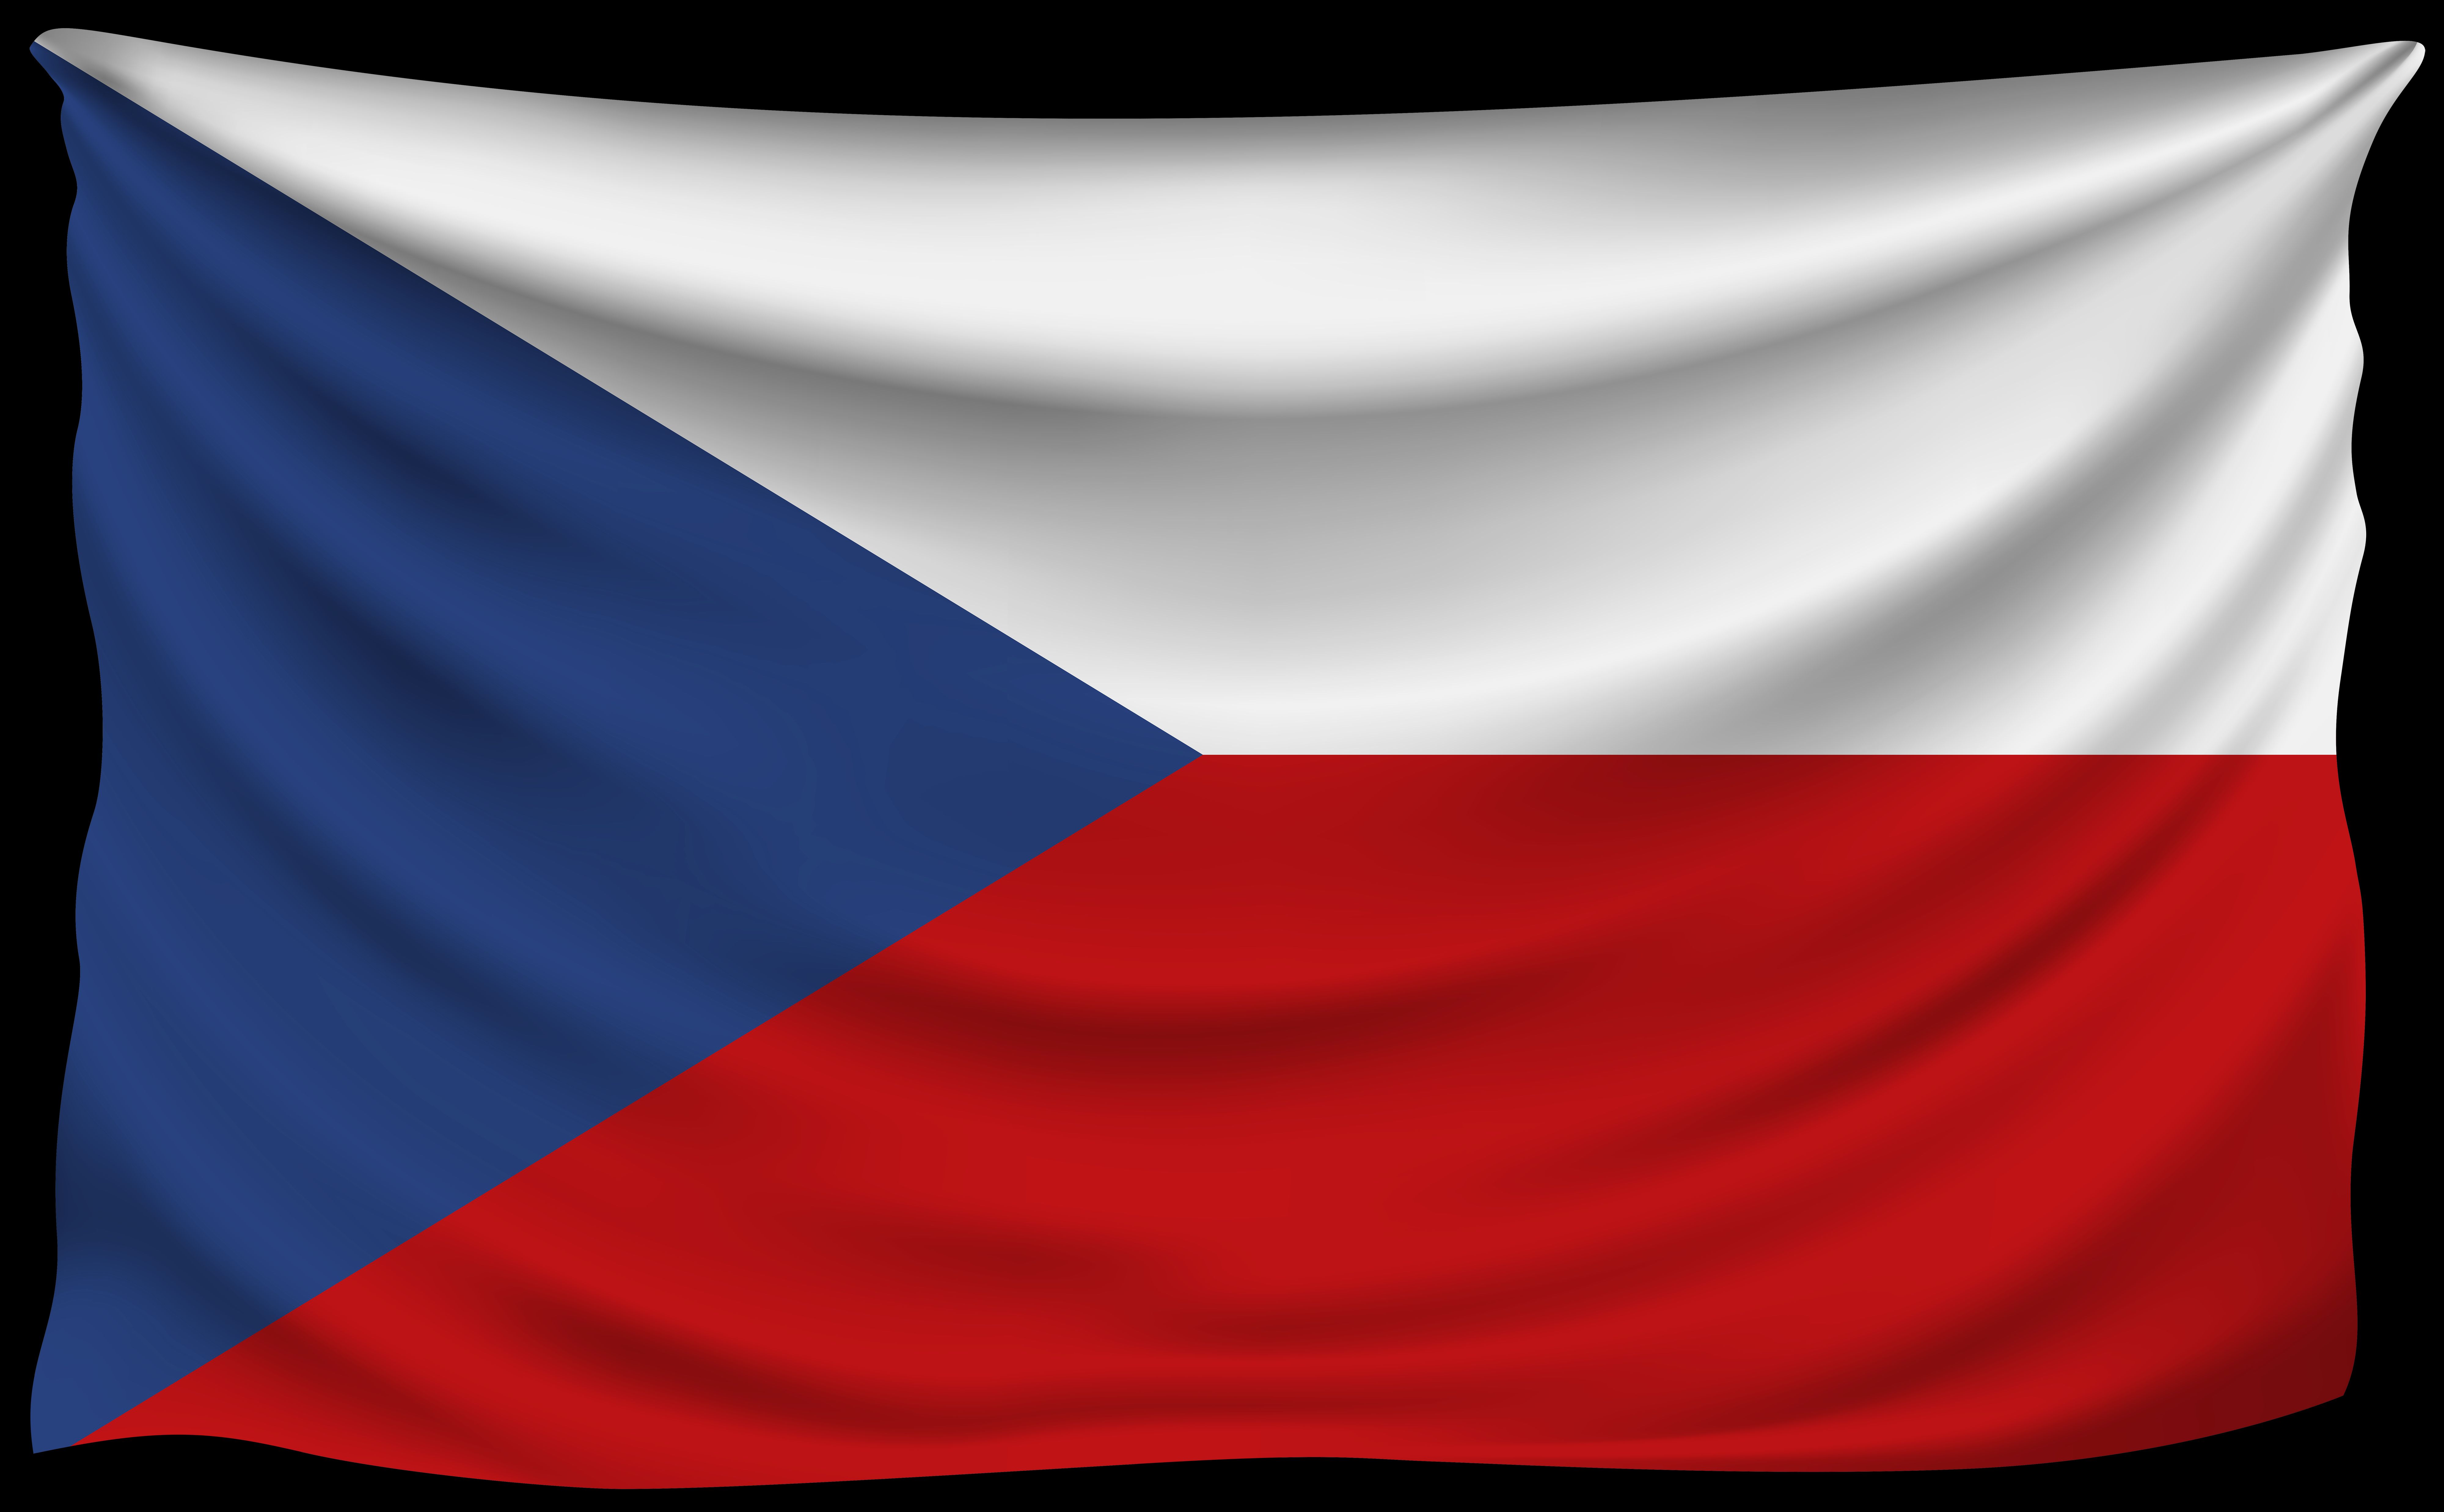 Как выглядит флаг чехии